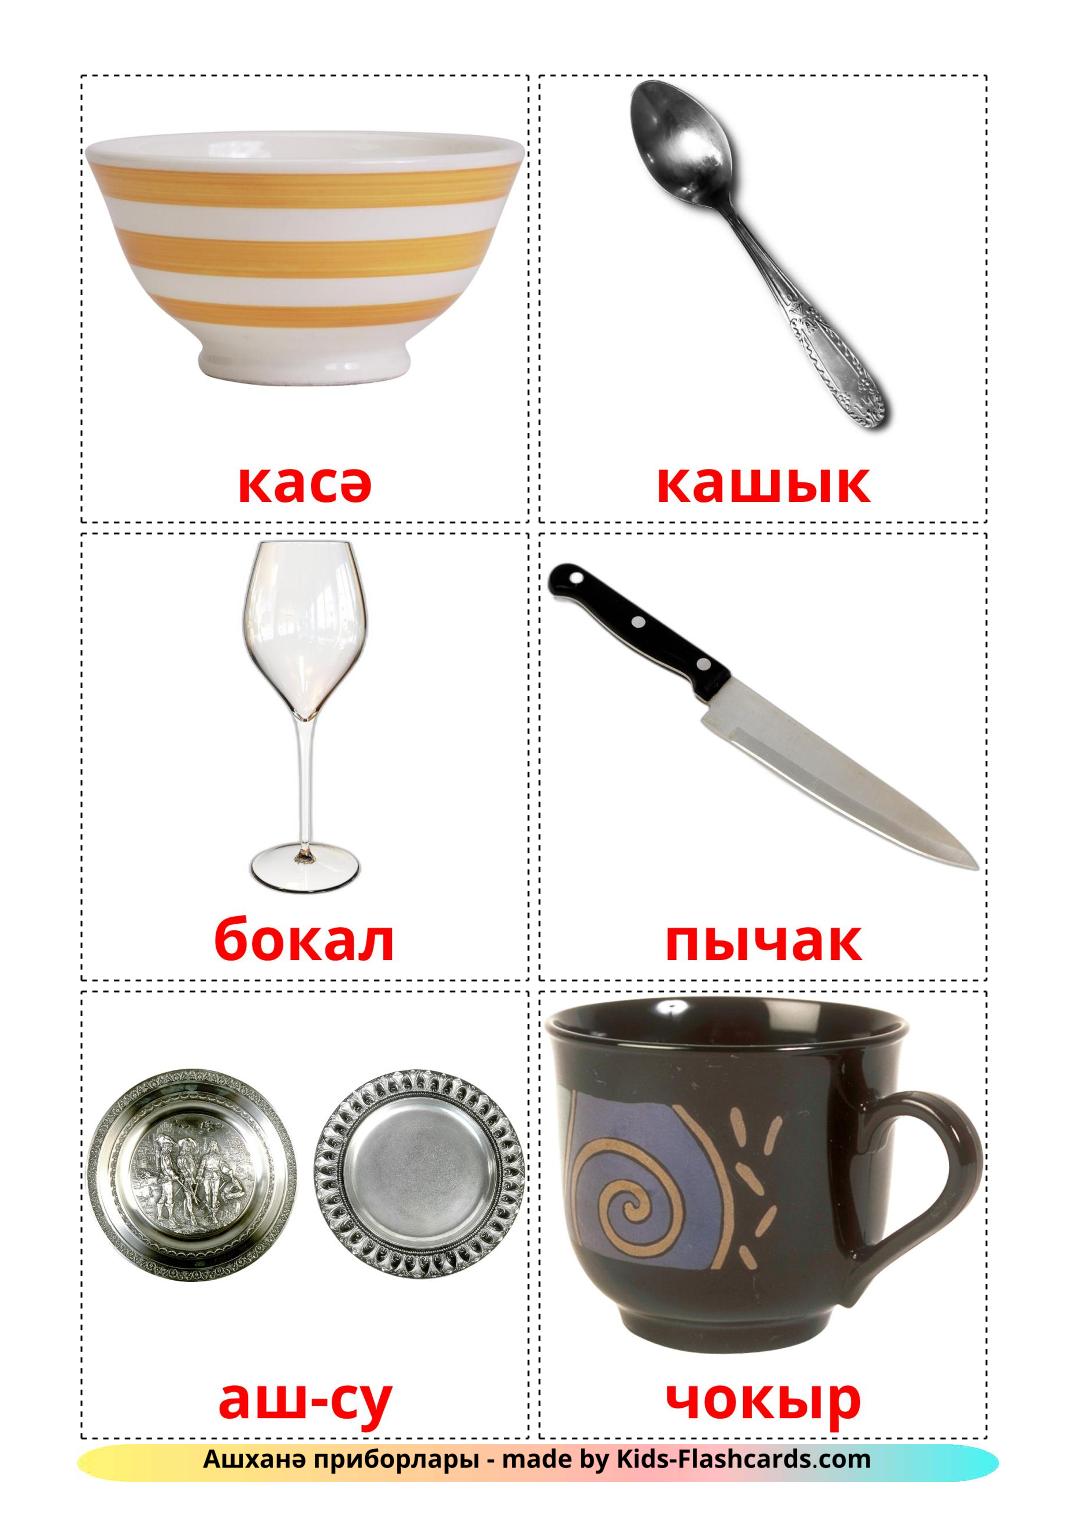 La Vaisselle et les Couverts - 29 Flashcards tatar imprimables gratuitement